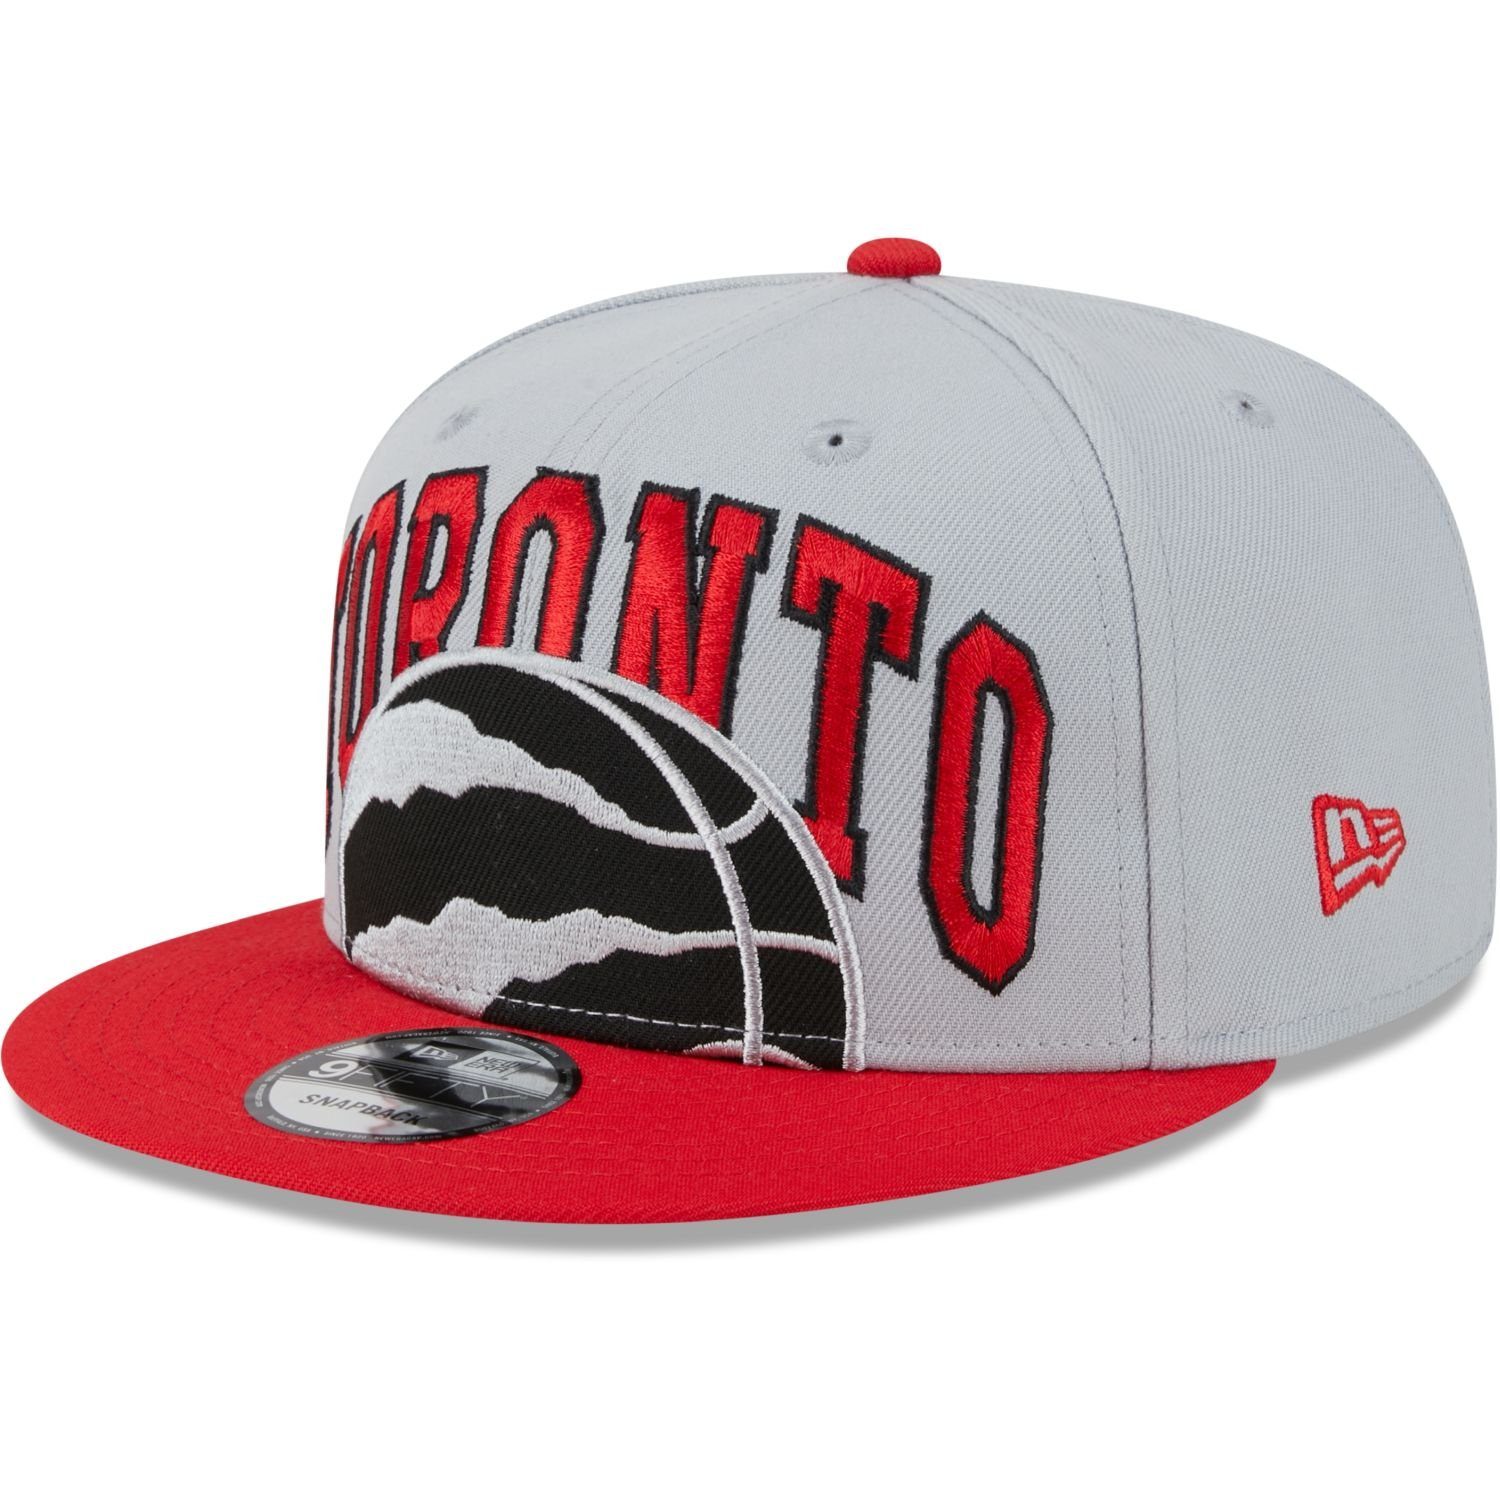 New Era Snapback Cap 9FIFTY TIPOFF NBA Raptors Toronto